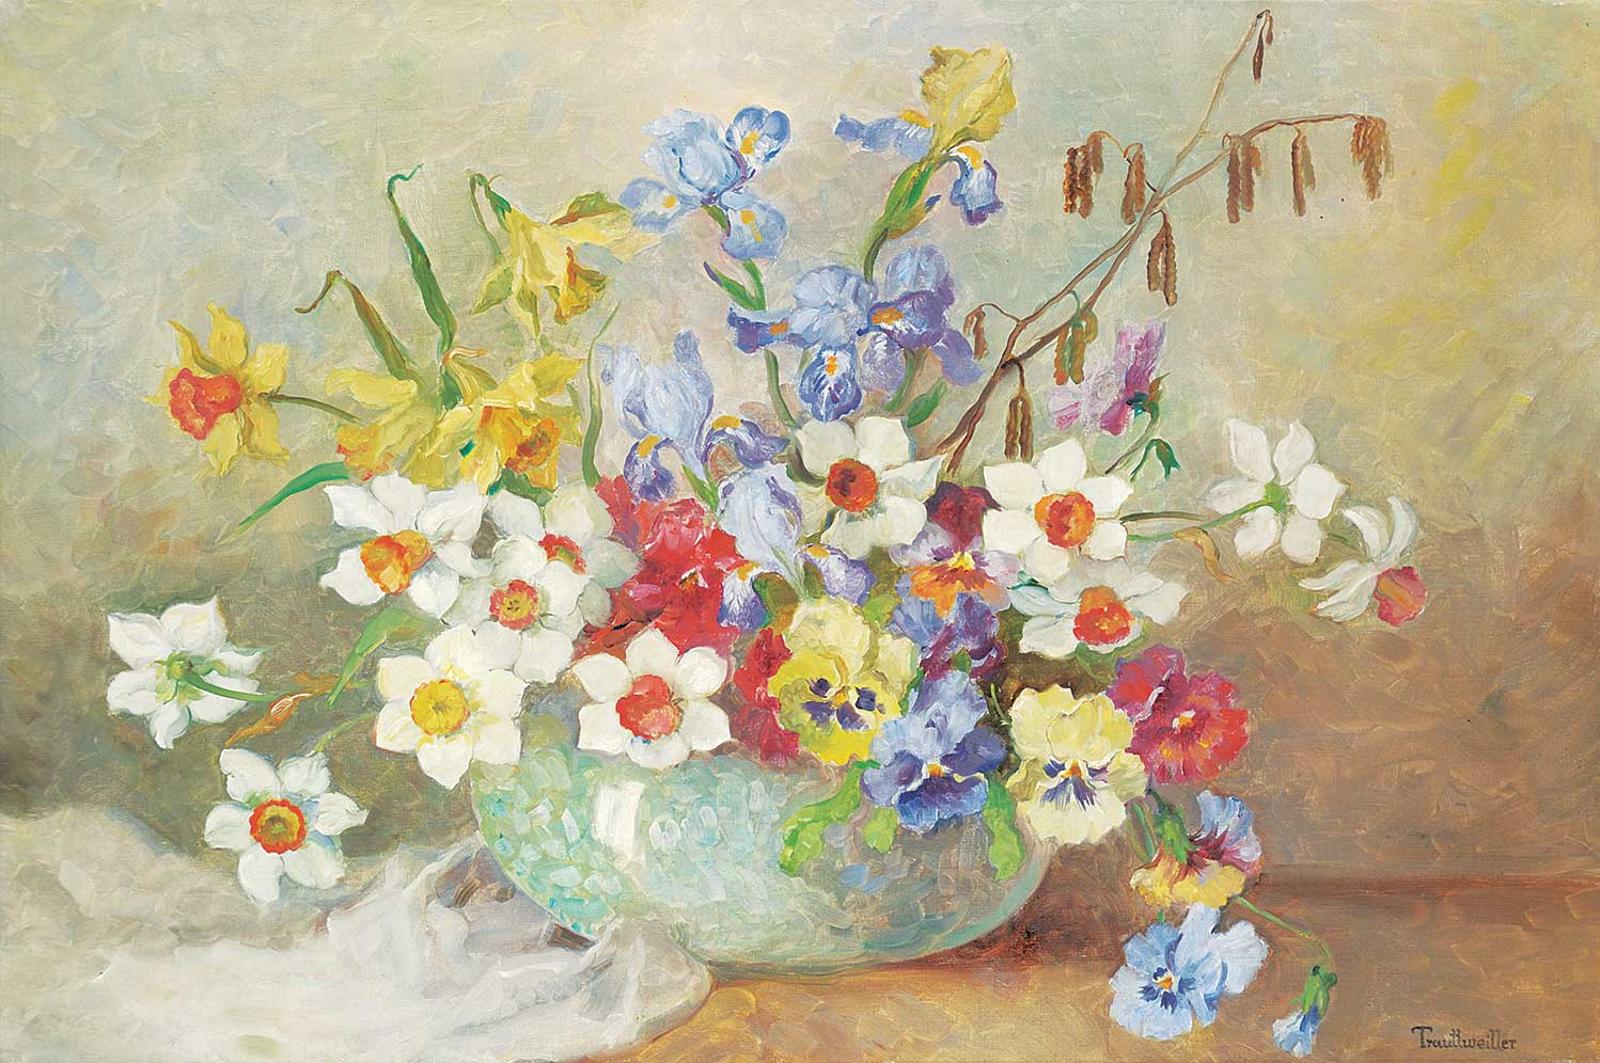 Stephanie von Trauttweiller (1888) - Untitled - Flowers in Blue Vase